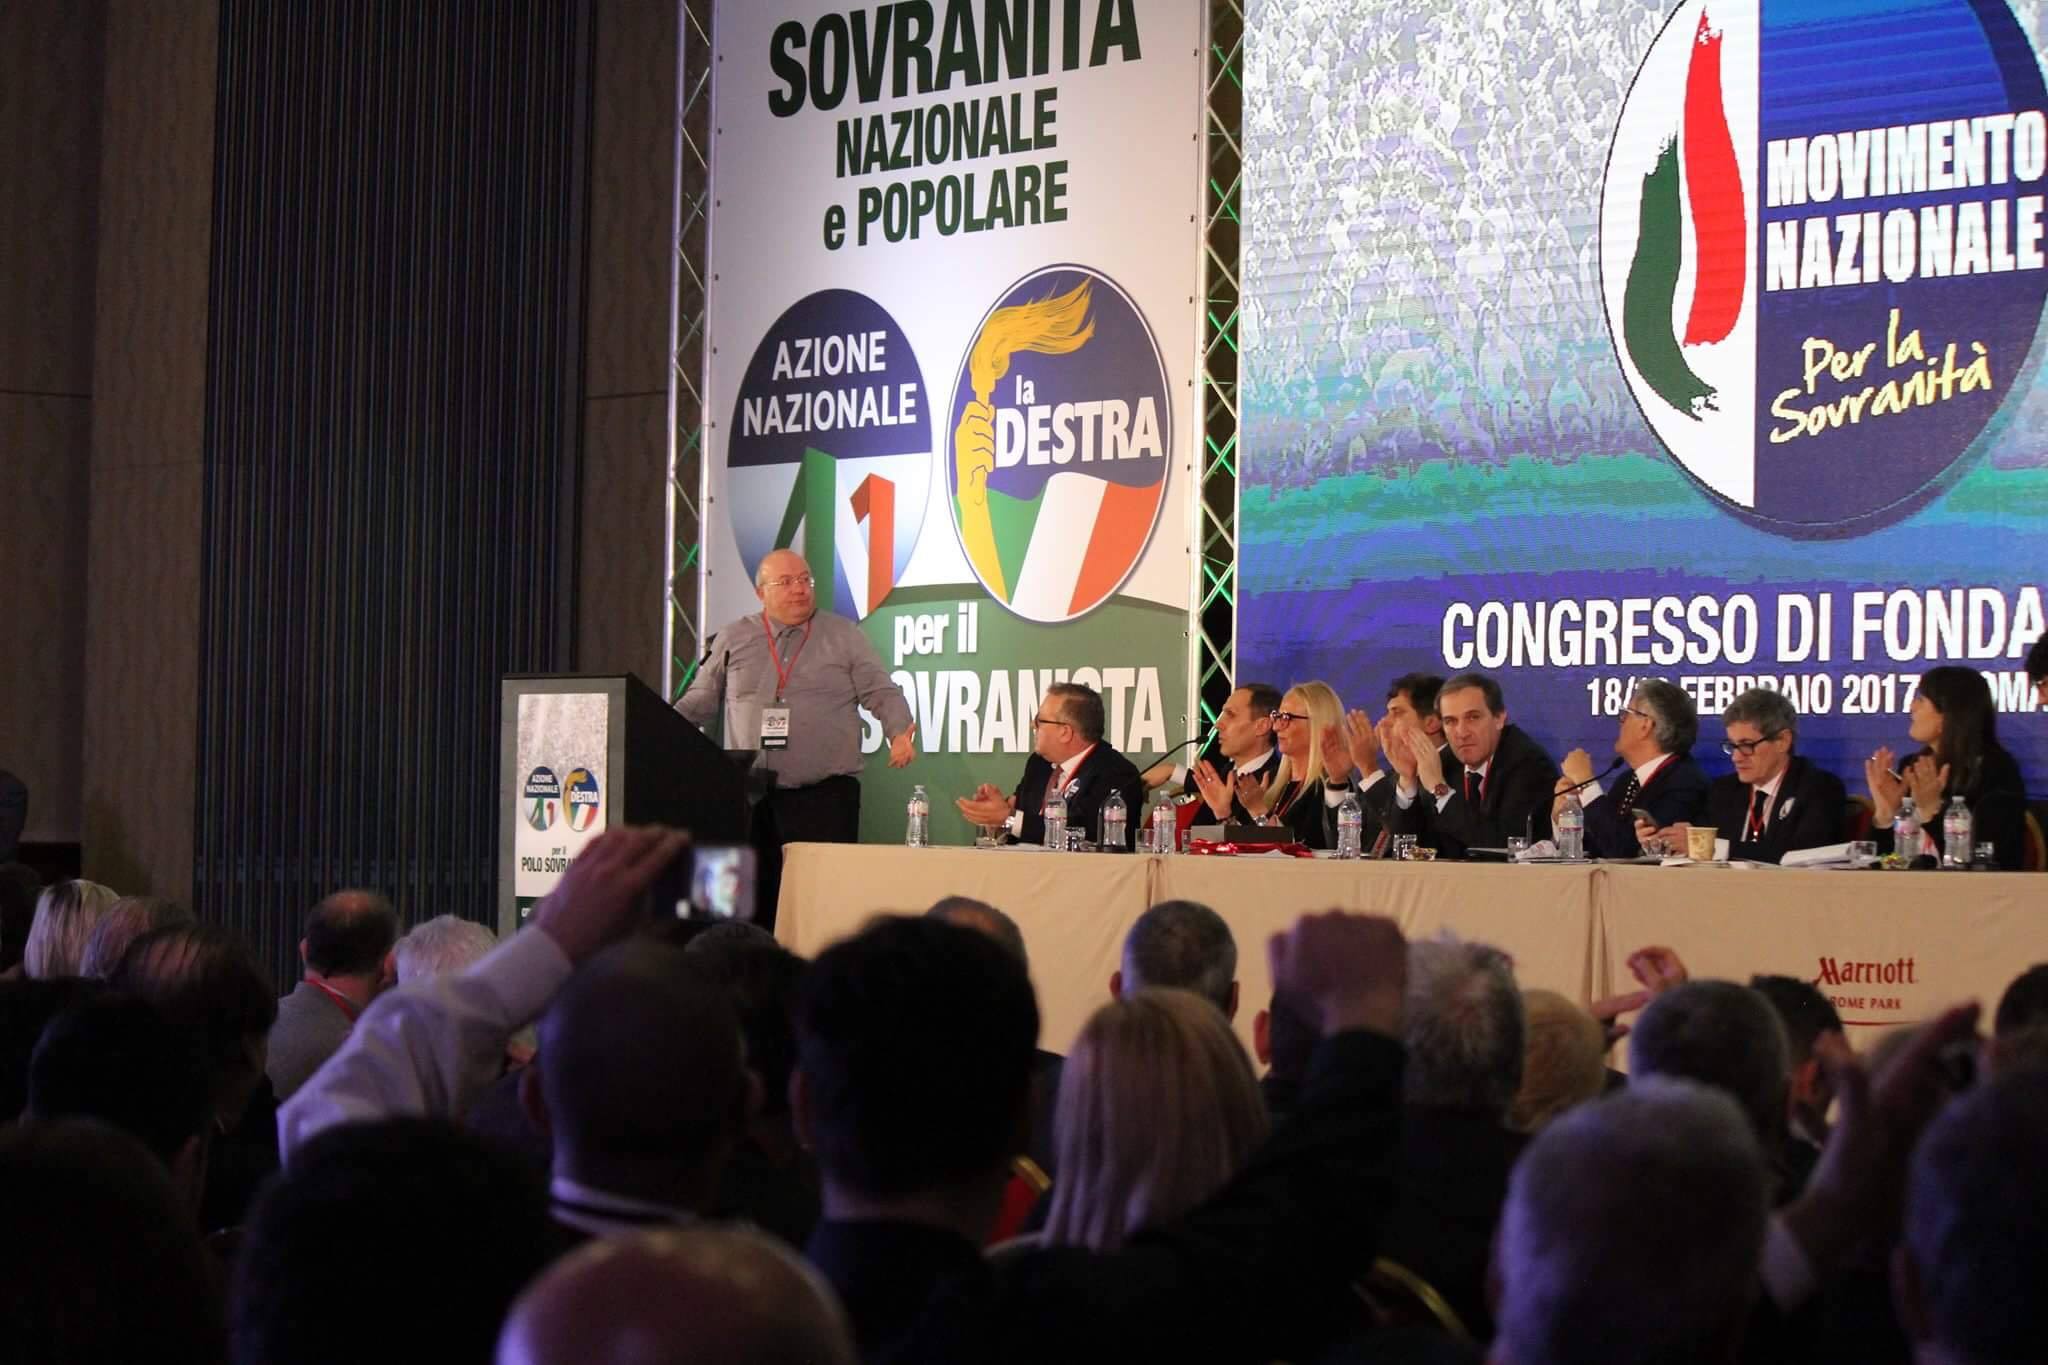  Napoli 7 dicembre, Movimento Nazionale di Alemanno e Storace e Lega di Salvini, insieme per il Polo Sovranista